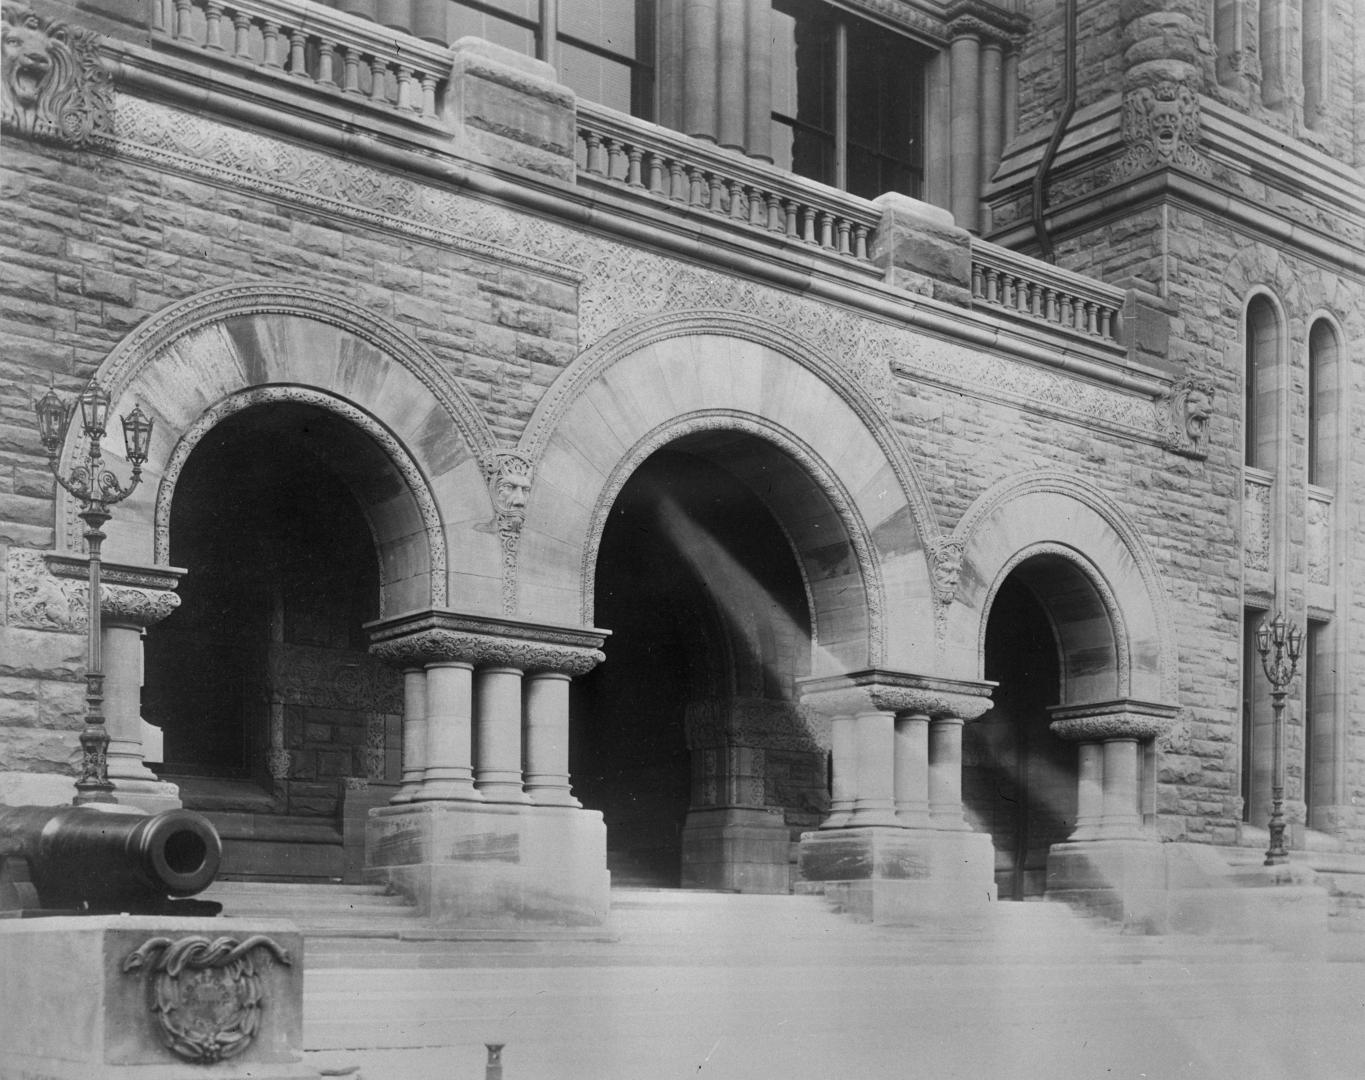 Parliment Buildings (1893), main entrance